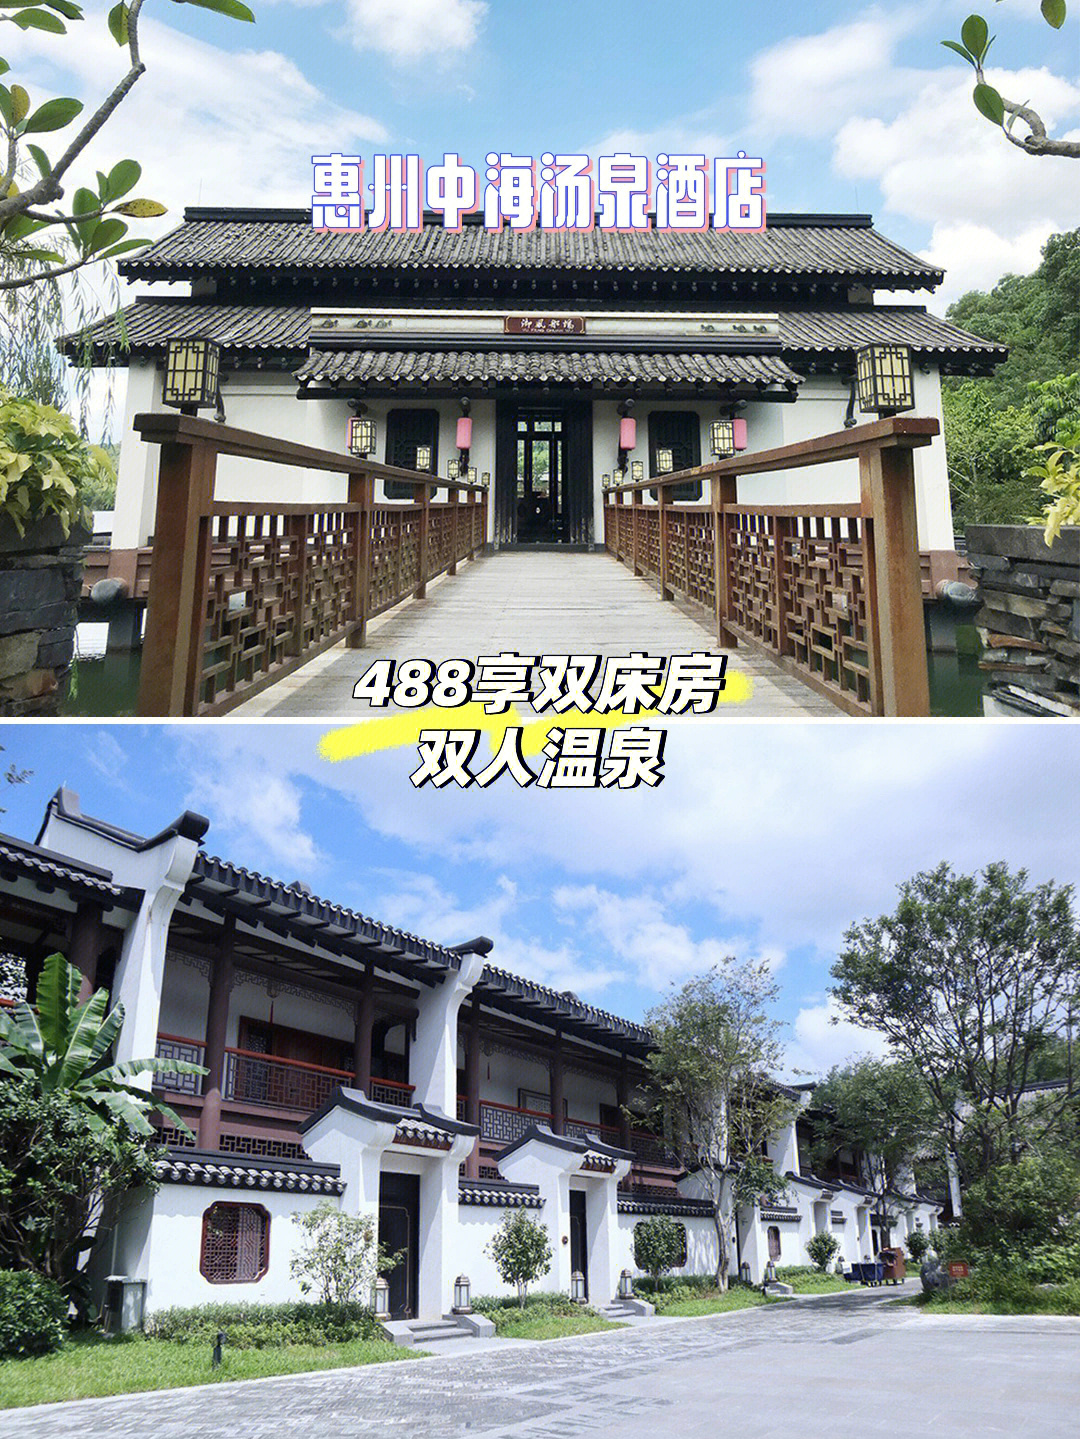 一个很有风格的温泉度假村99惠州中海汤泉酒店78整体度假区是一